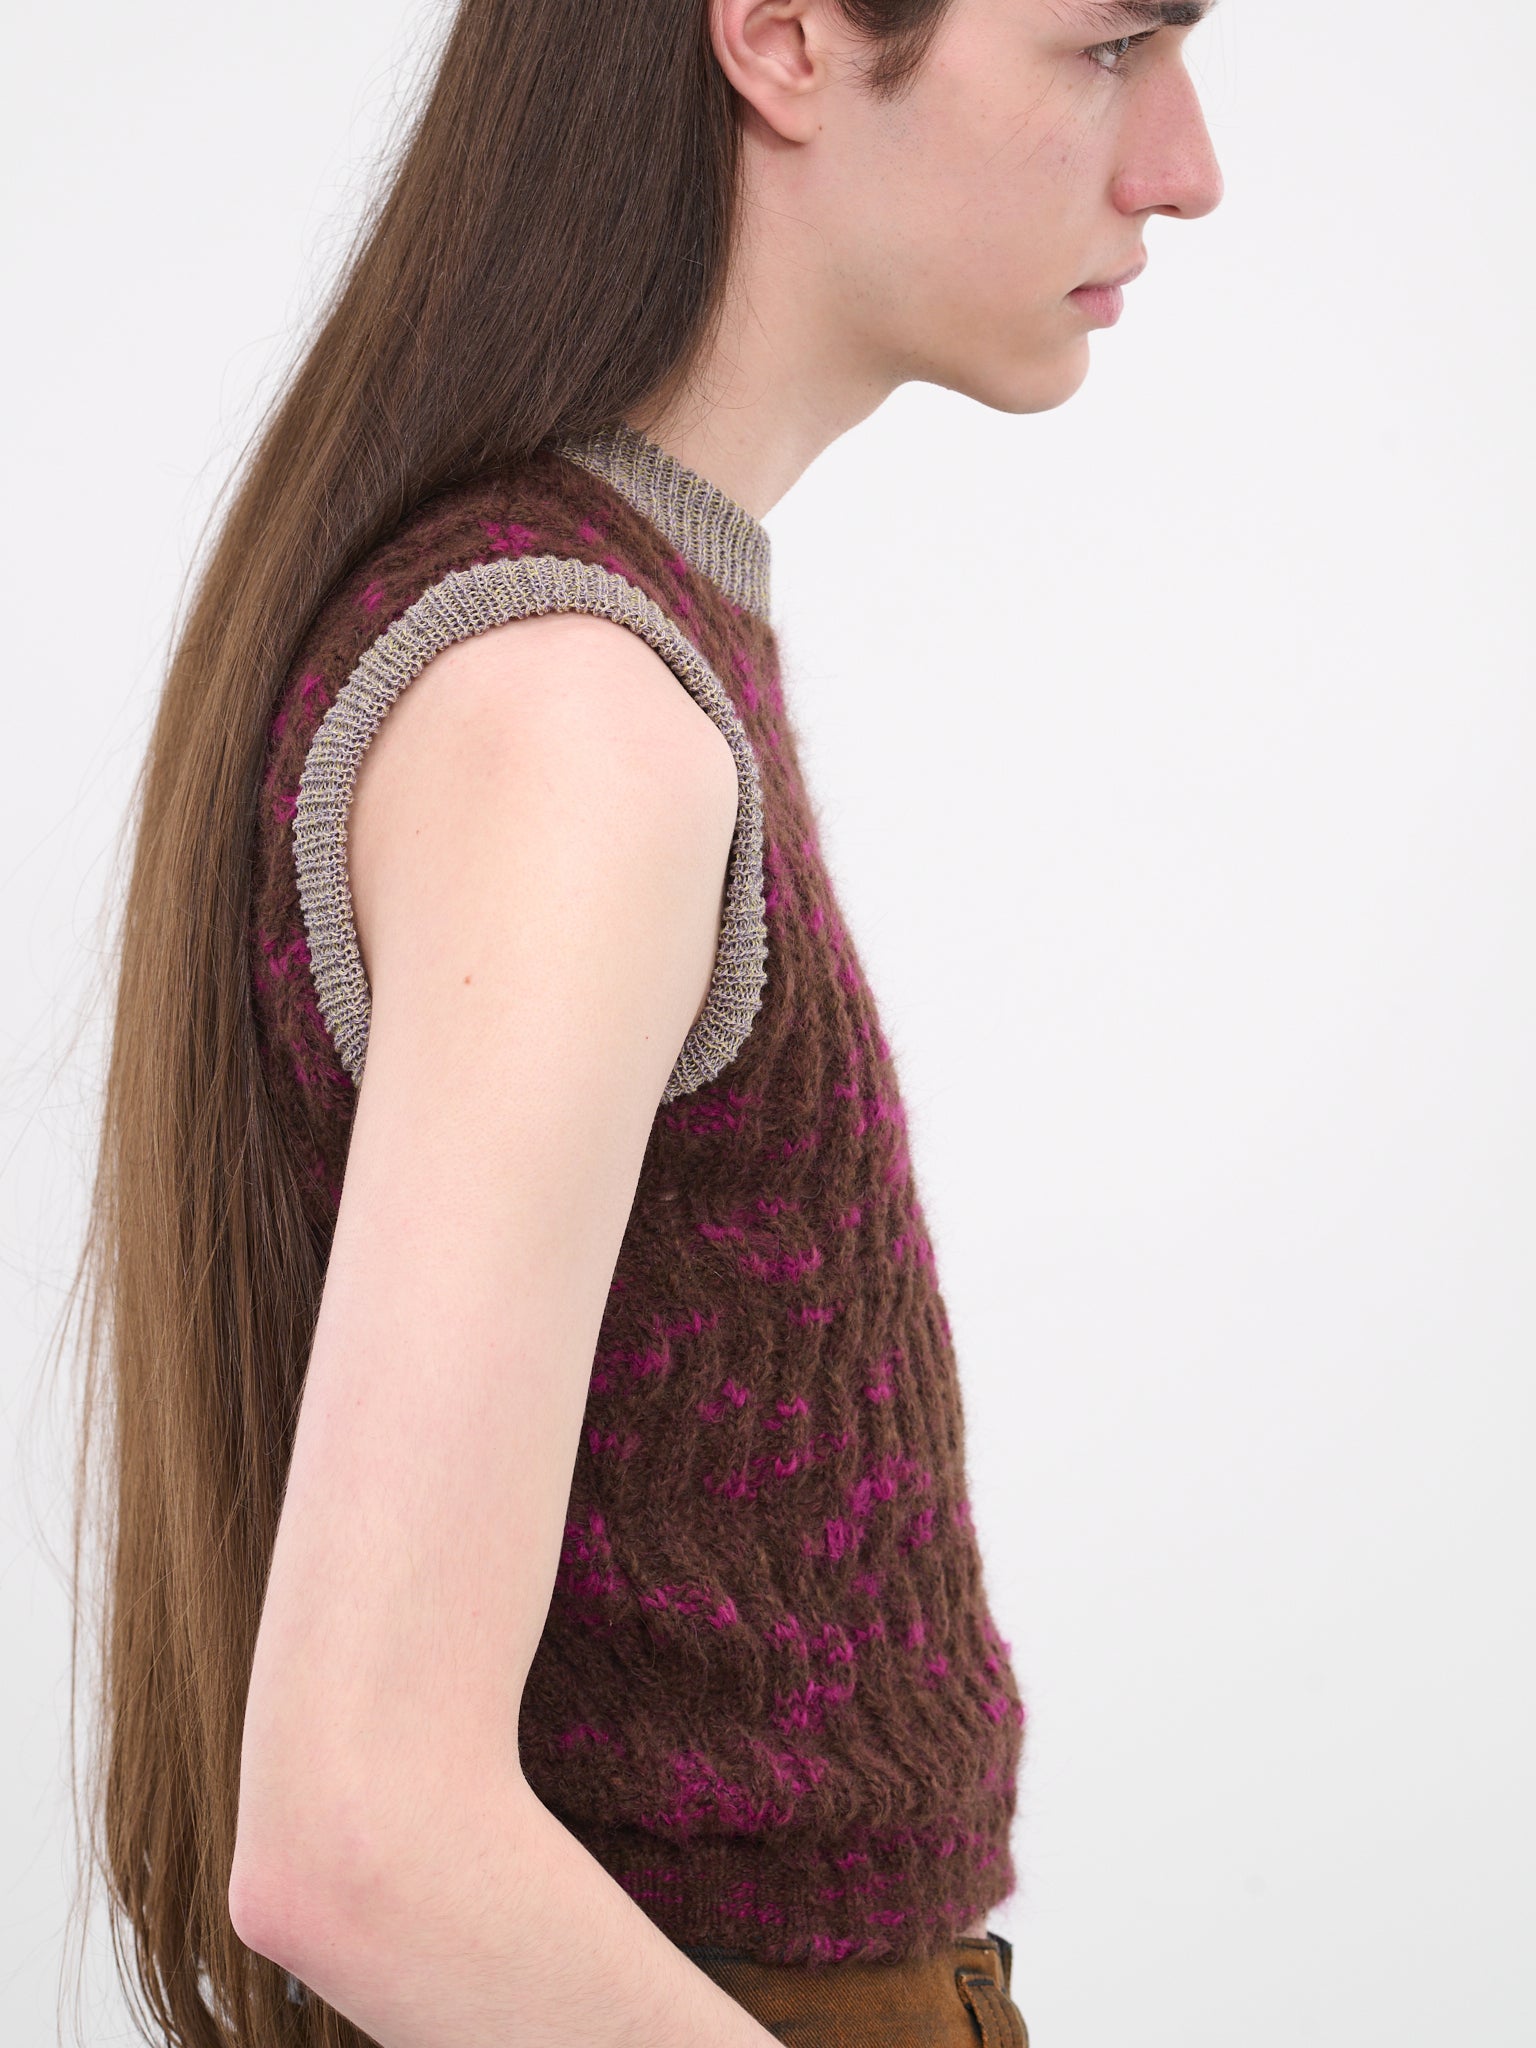 Mohair Knit Vest (8057-EL-S-SANGUINE)